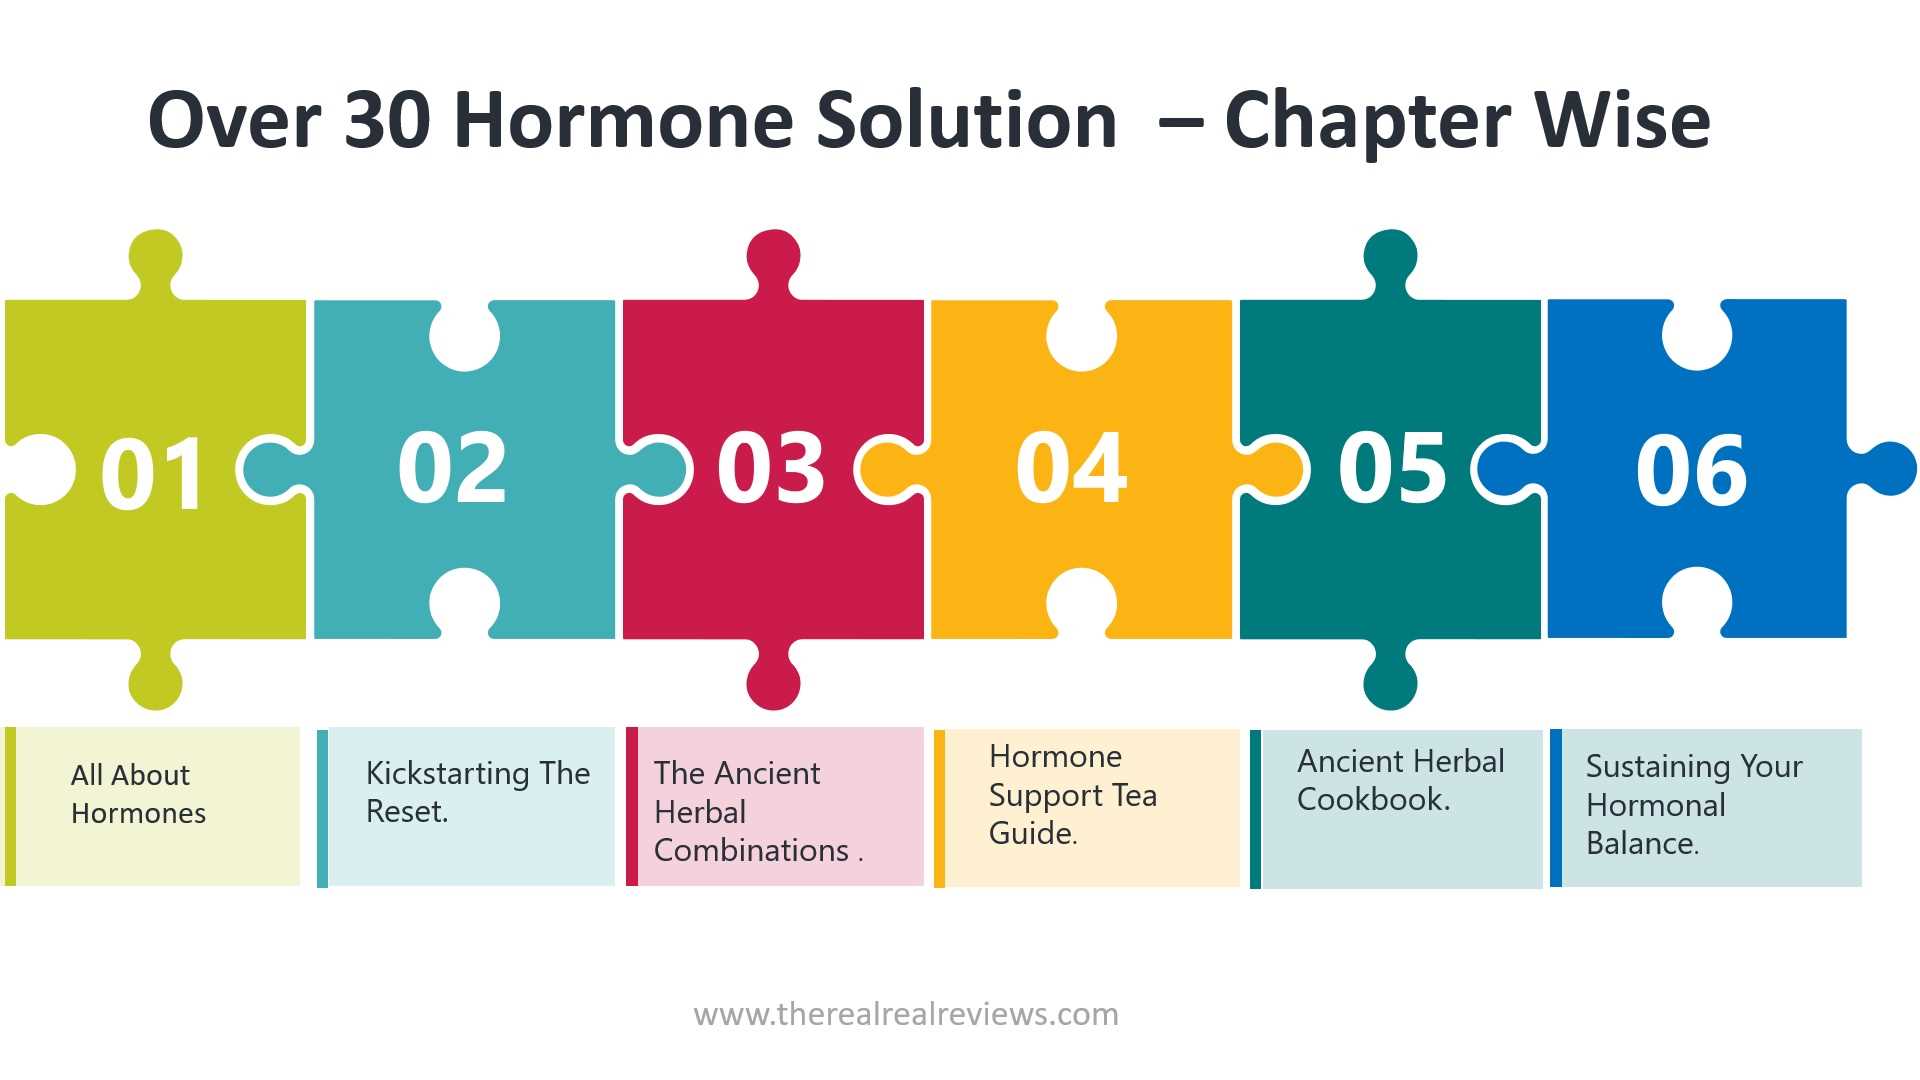 Over 30 Hormones Solution Handbook chapter wise